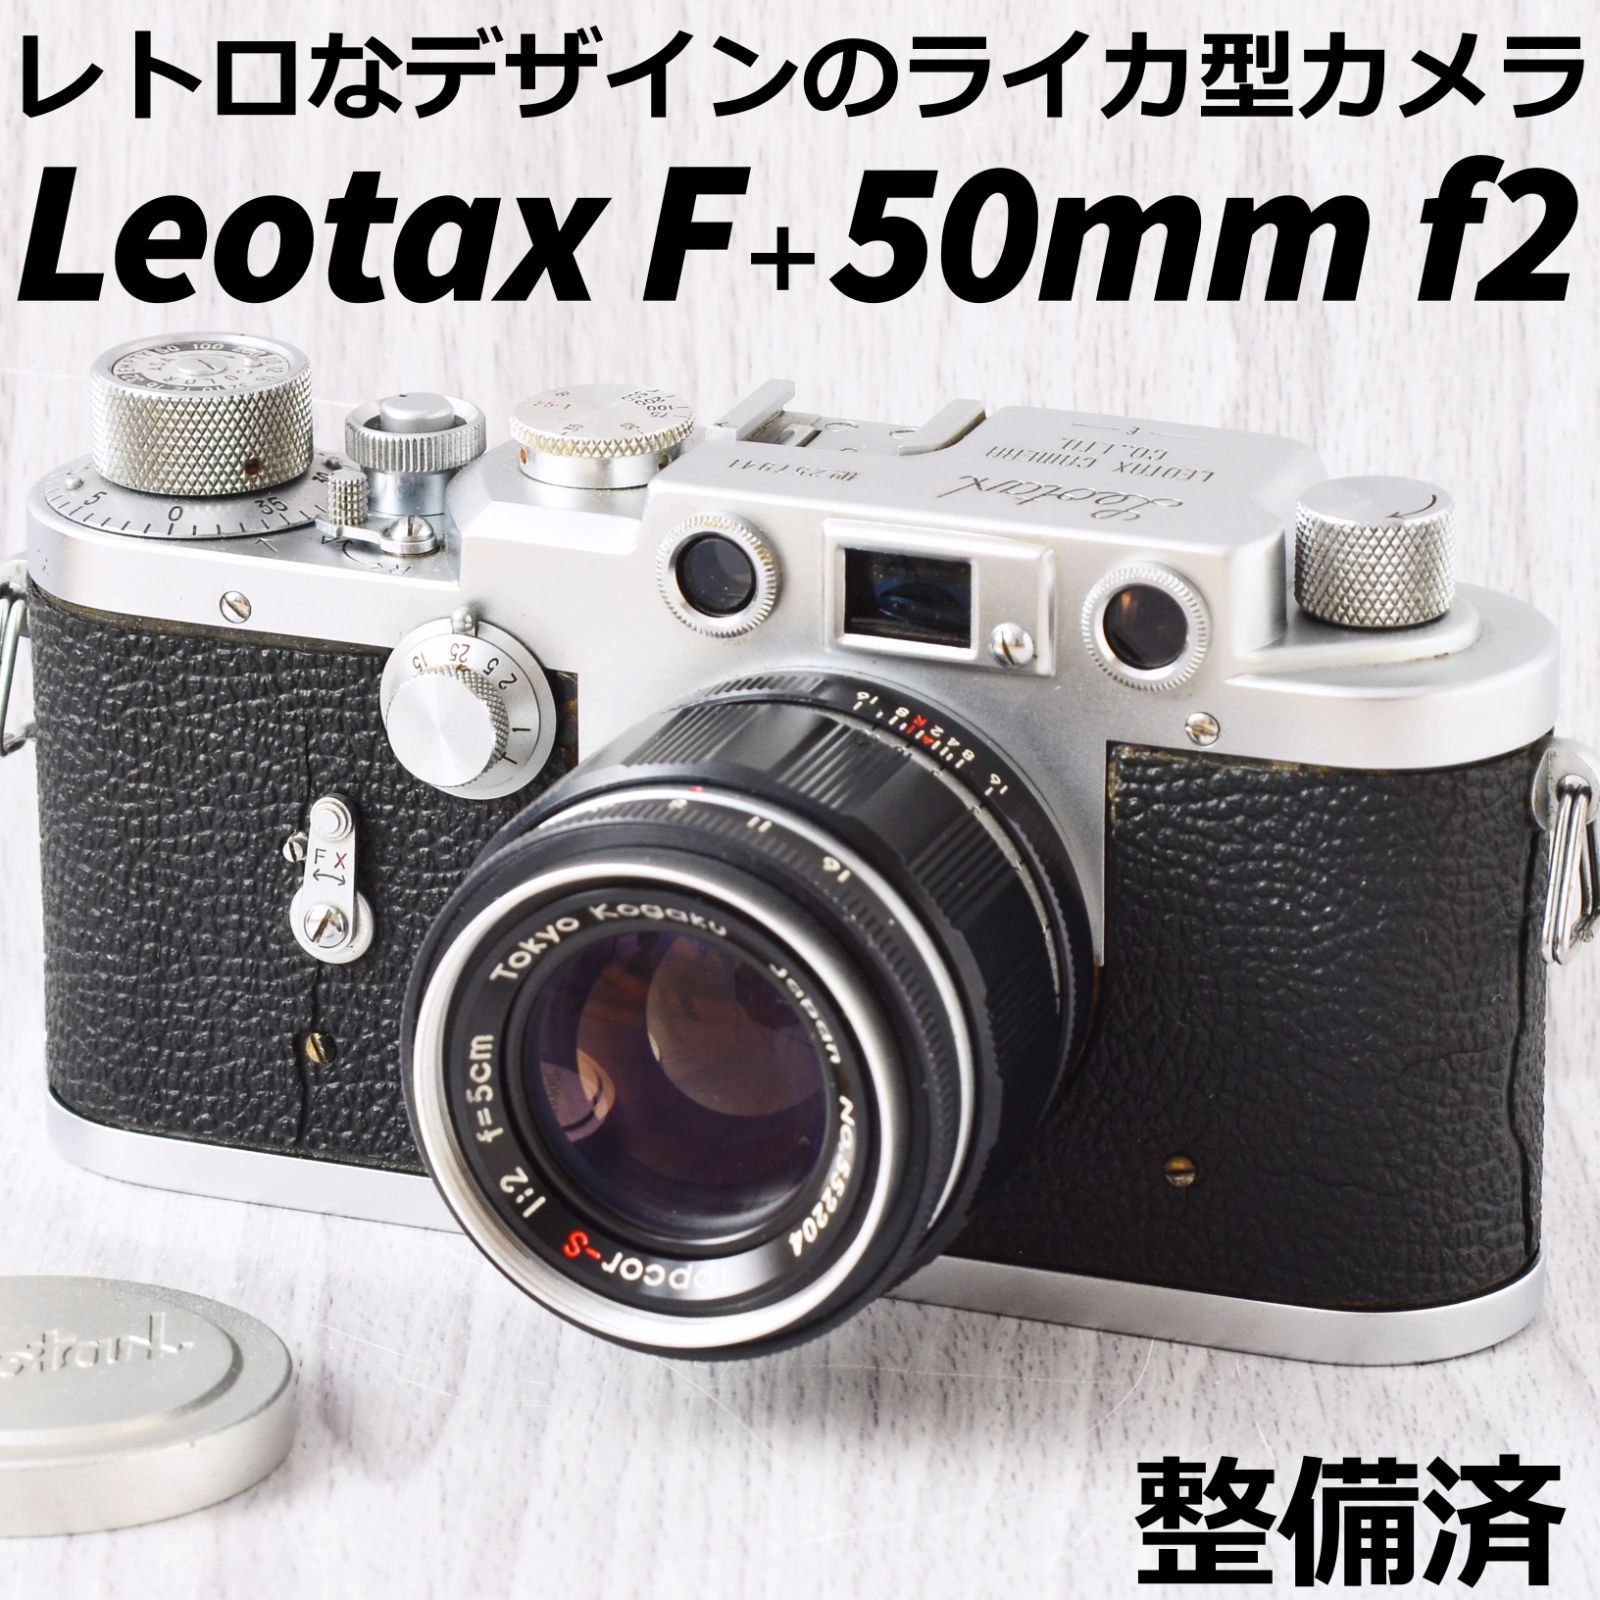 修理清掃した完動品ですLeotax F + 50mm f2 バルナックライカ型オールドカメラ 整備済